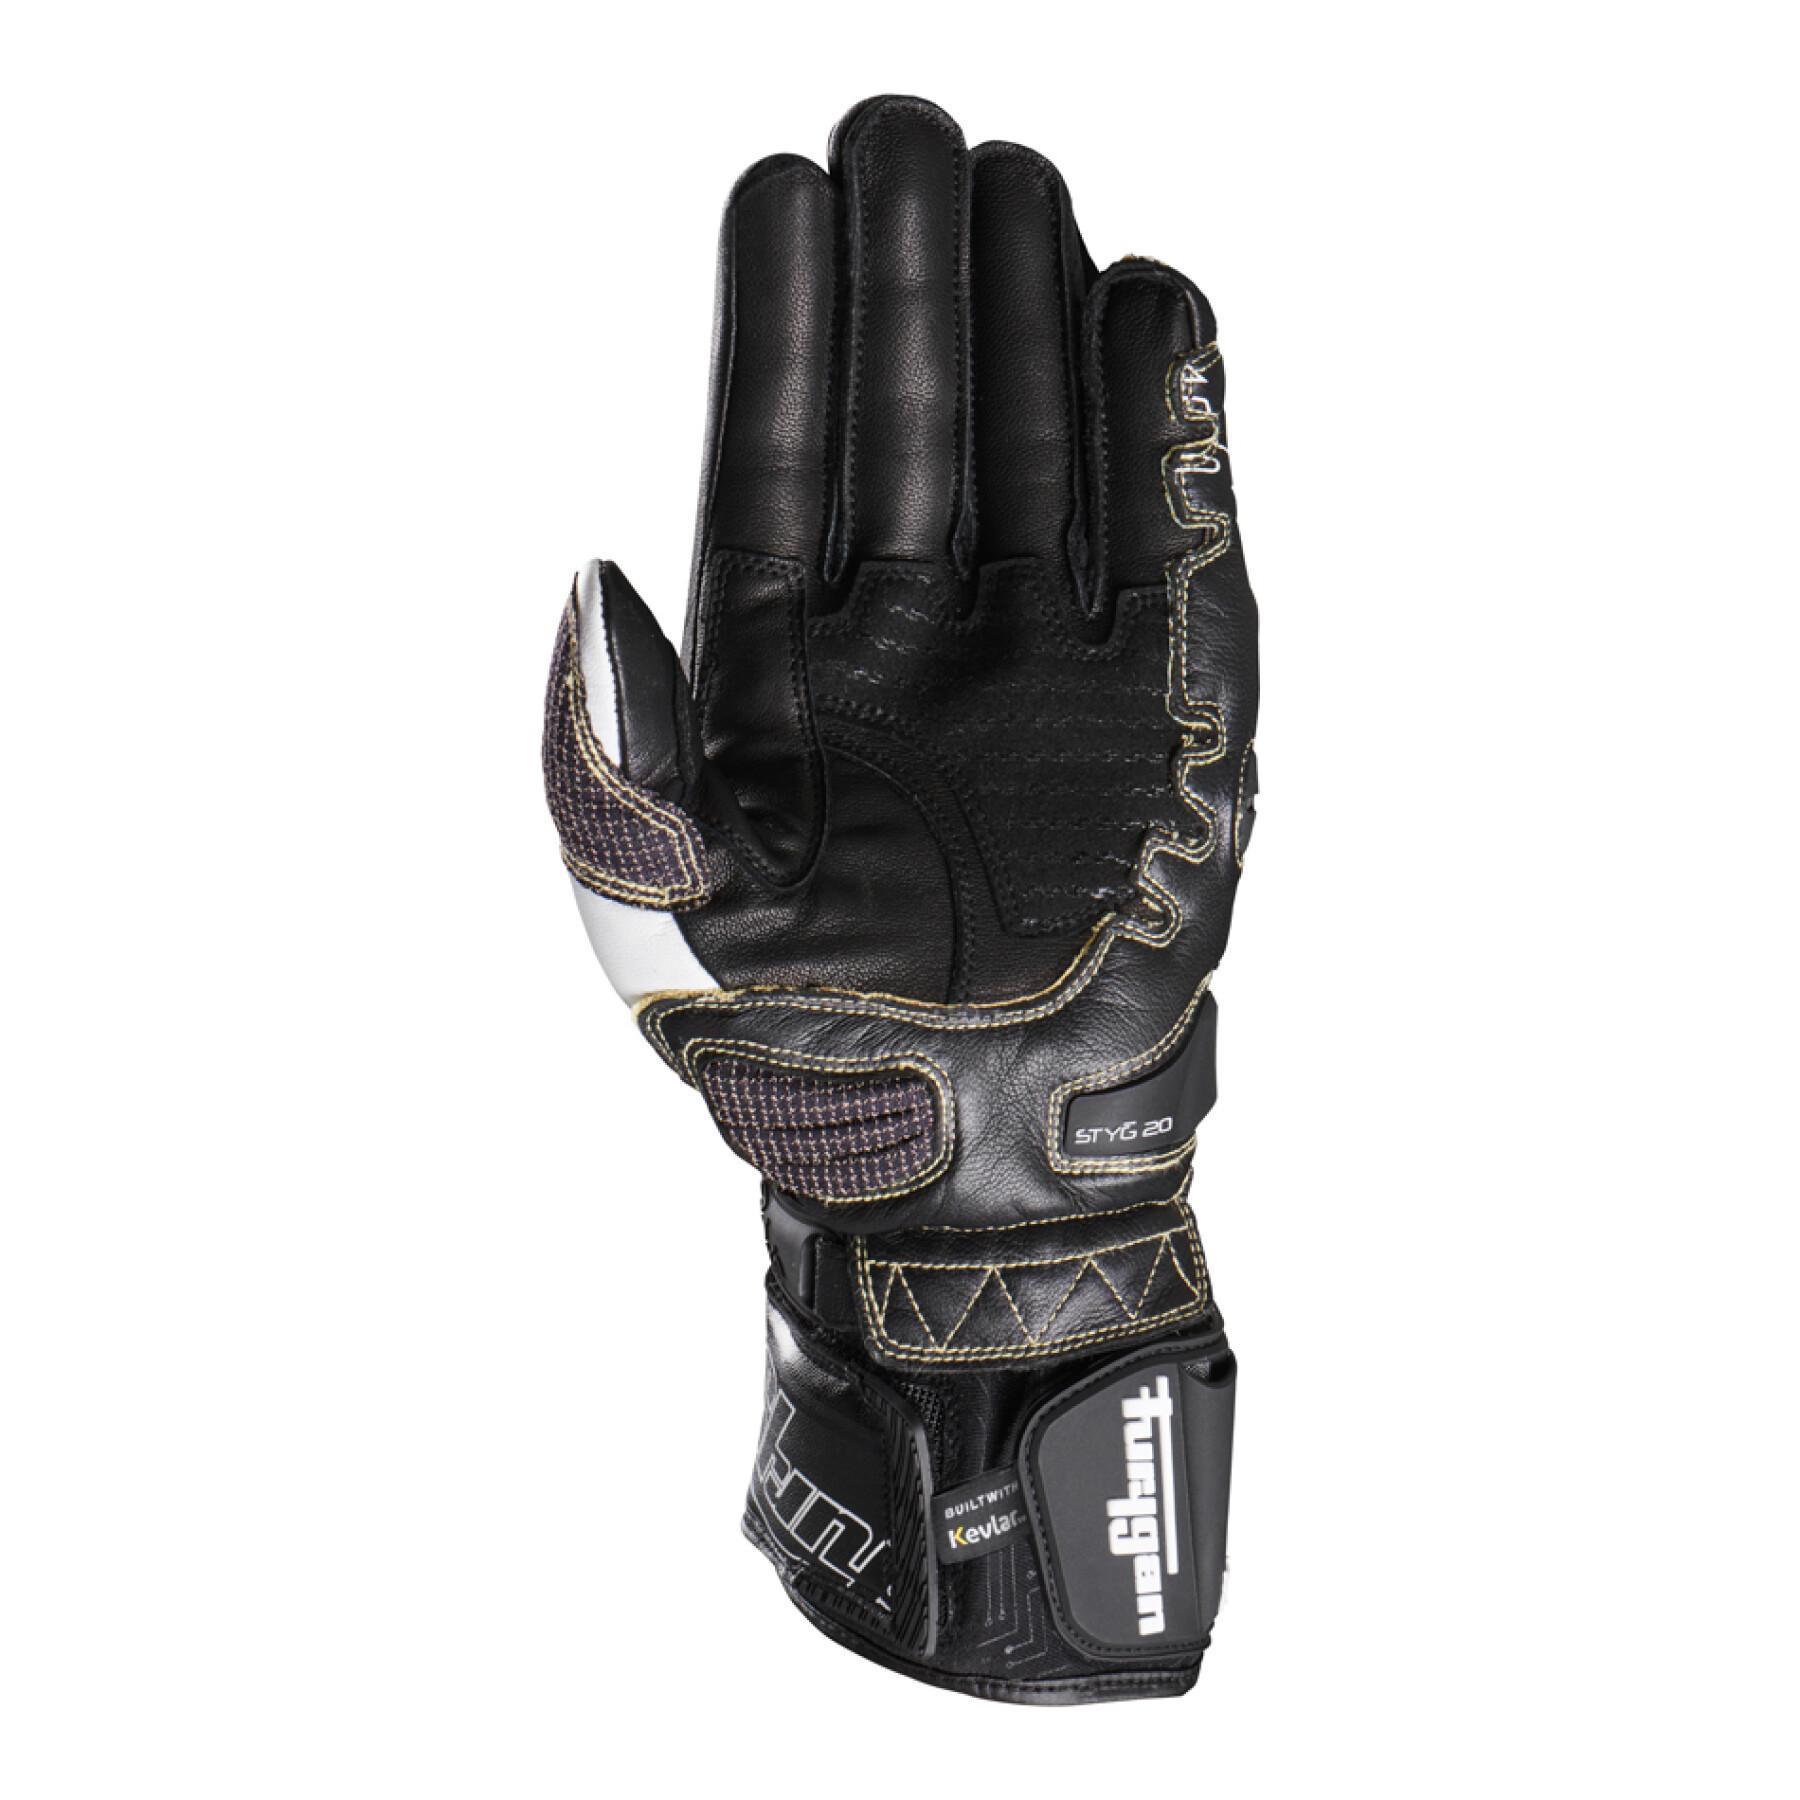 Handskar för motorcykelracing Furygan Styg20 X Kevlar